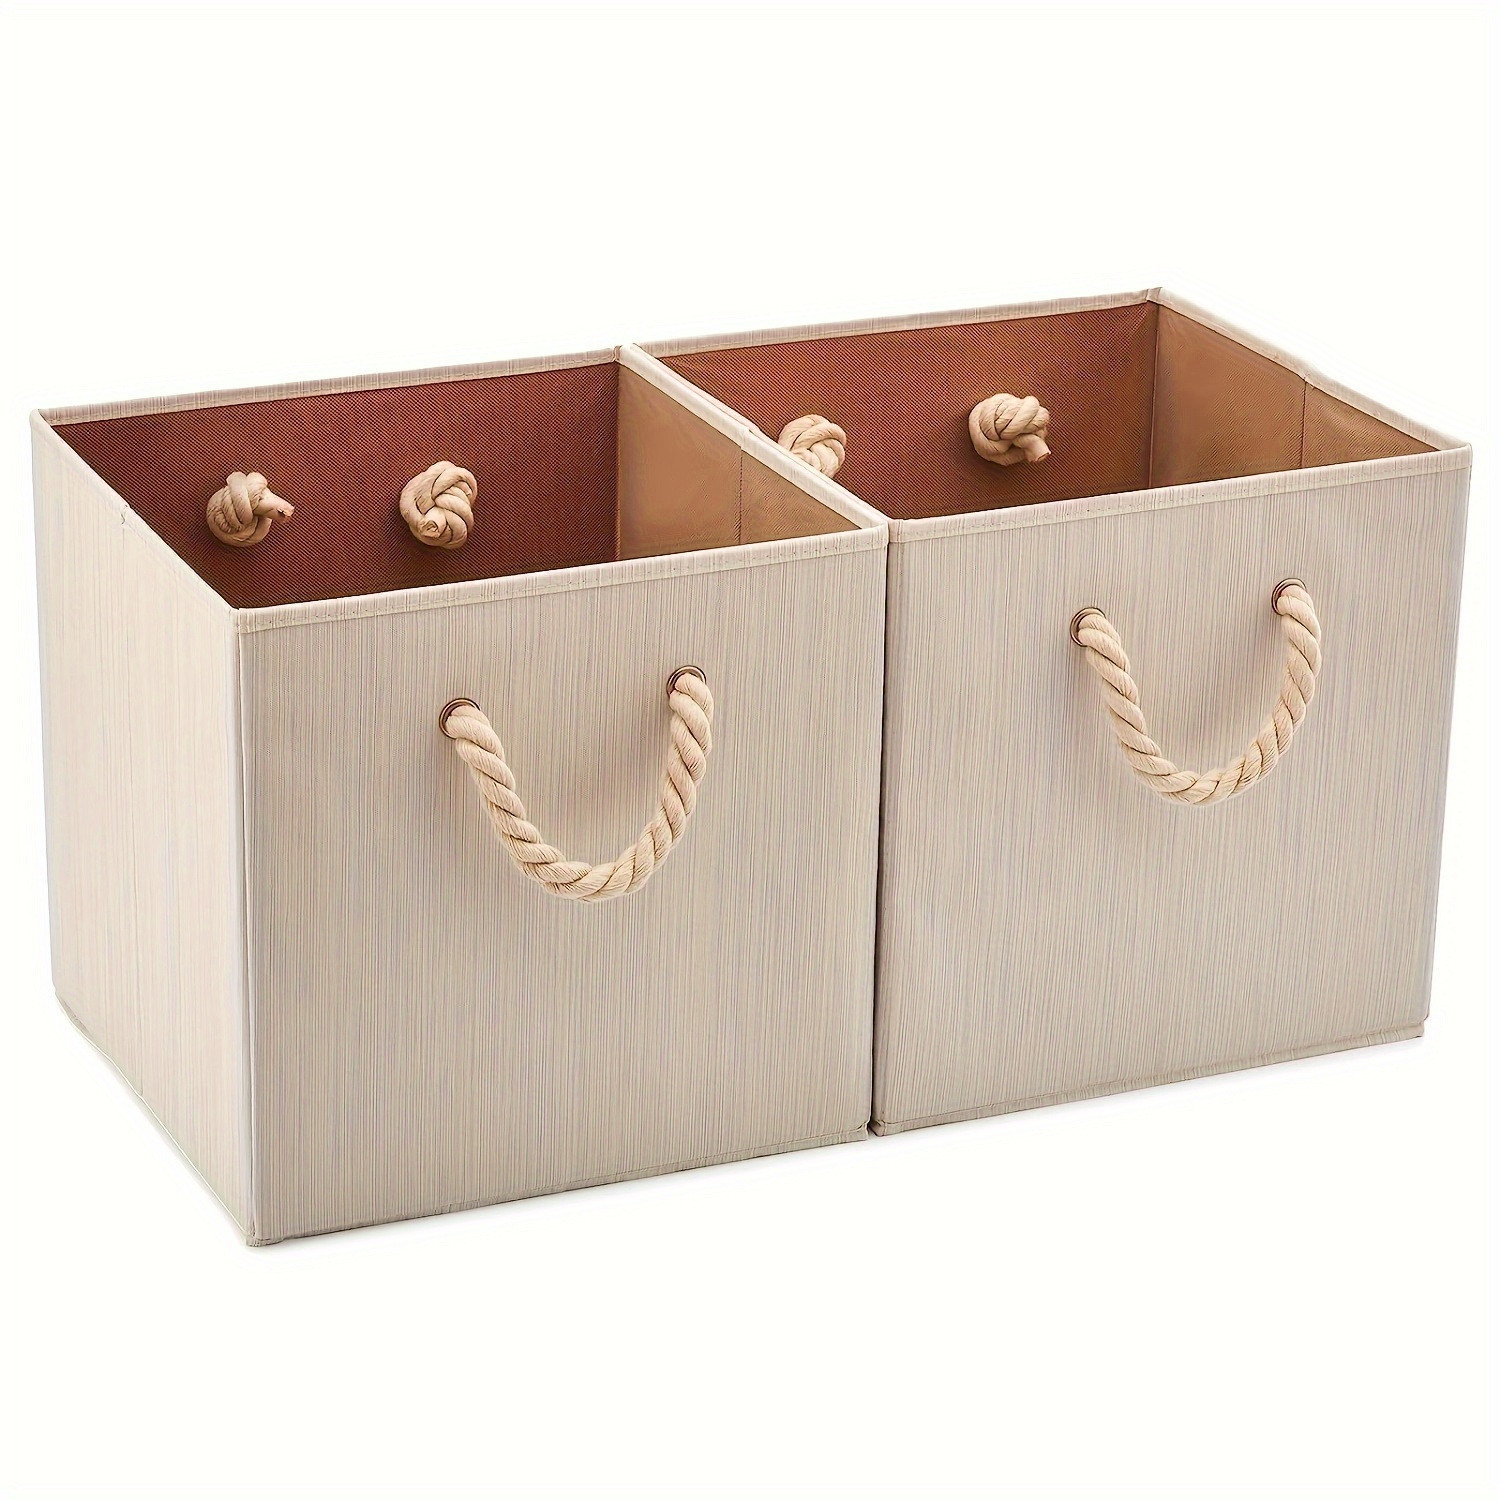 caja-almacenaje-madera-cuerda